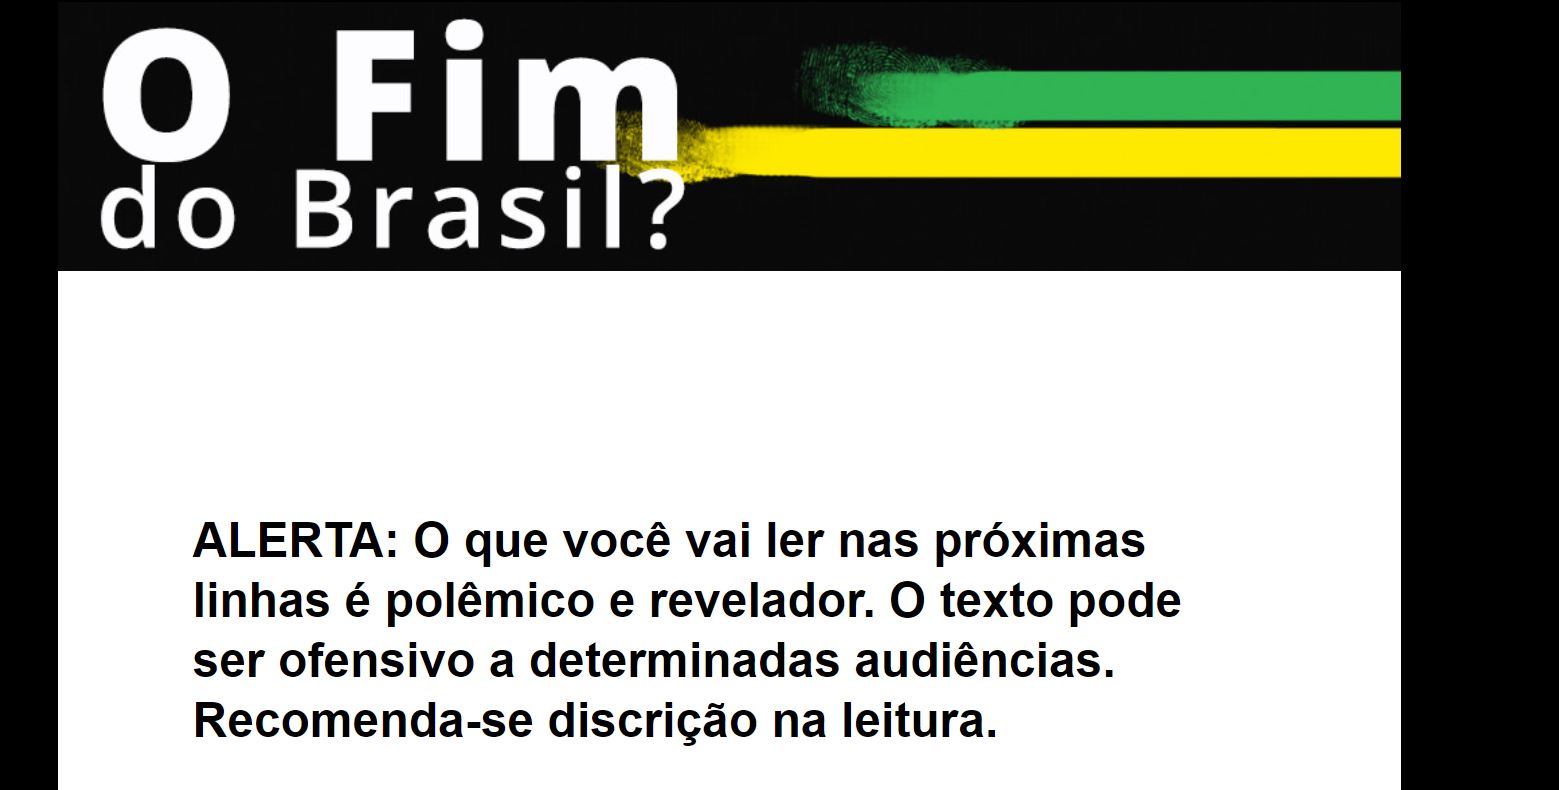 Carta de vendas da Empiricus anuncia “O Fim do Brasil” e avisa que o que será lido nas próximas linhas pode ser polêmico, revelador e ofensivo para determinados públicos. 